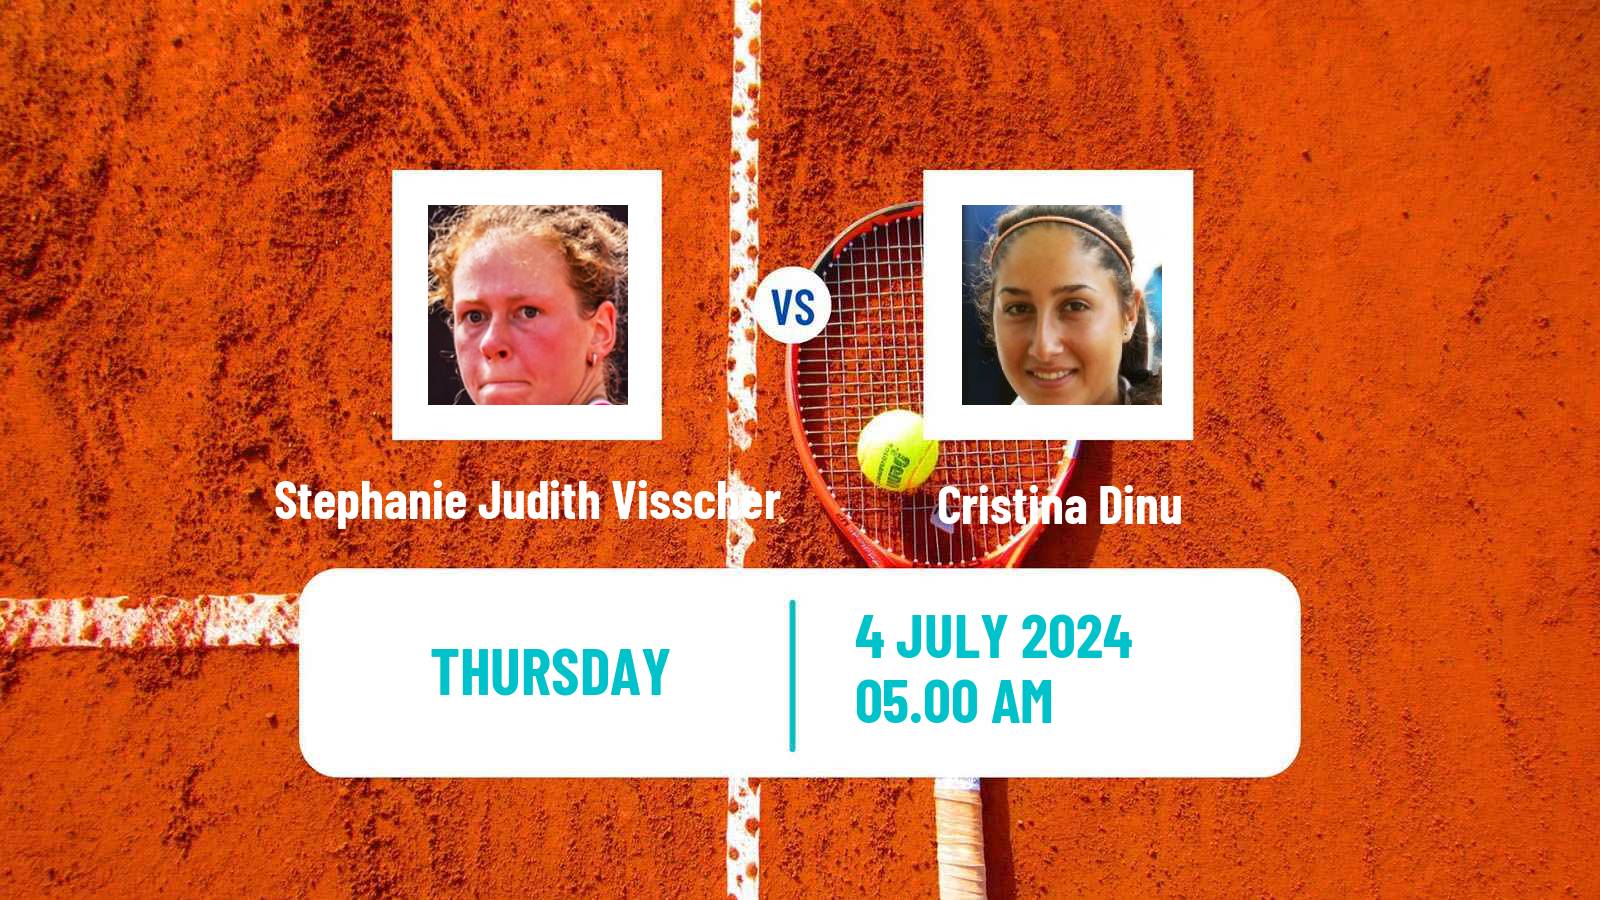 Tennis ITF W35 Stuttgart Vaihingen Women Stephanie Judith Visscher - Cristina Dinu